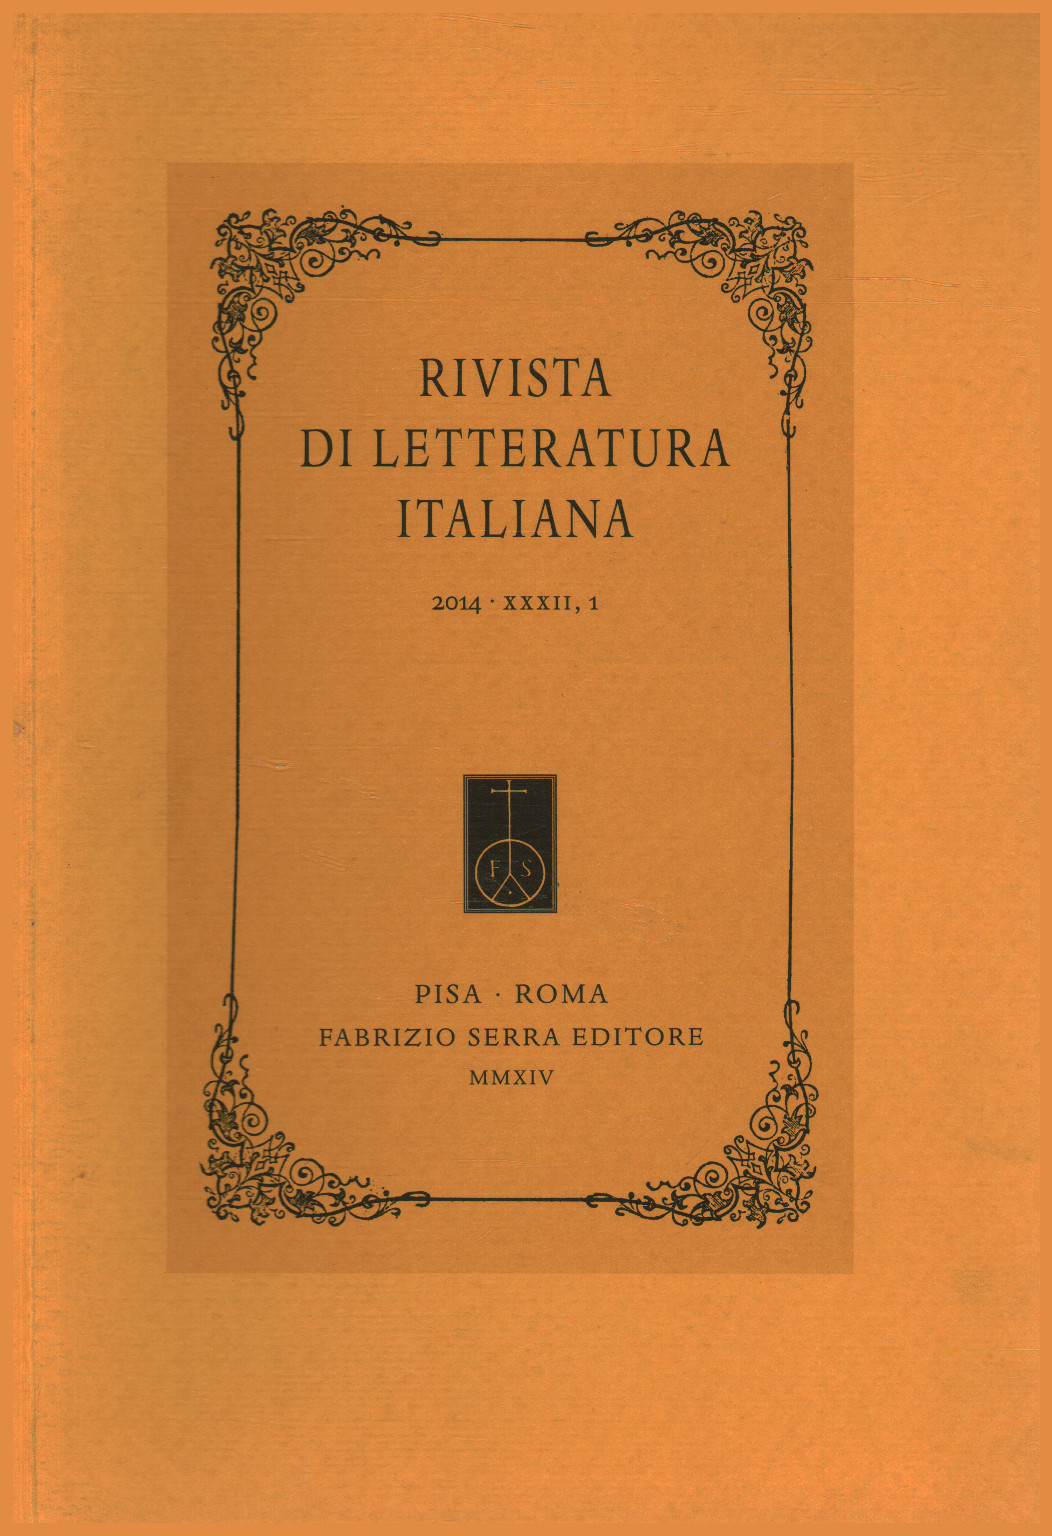 Revista de literatura italiana 2014 XXXII 1, s.a.